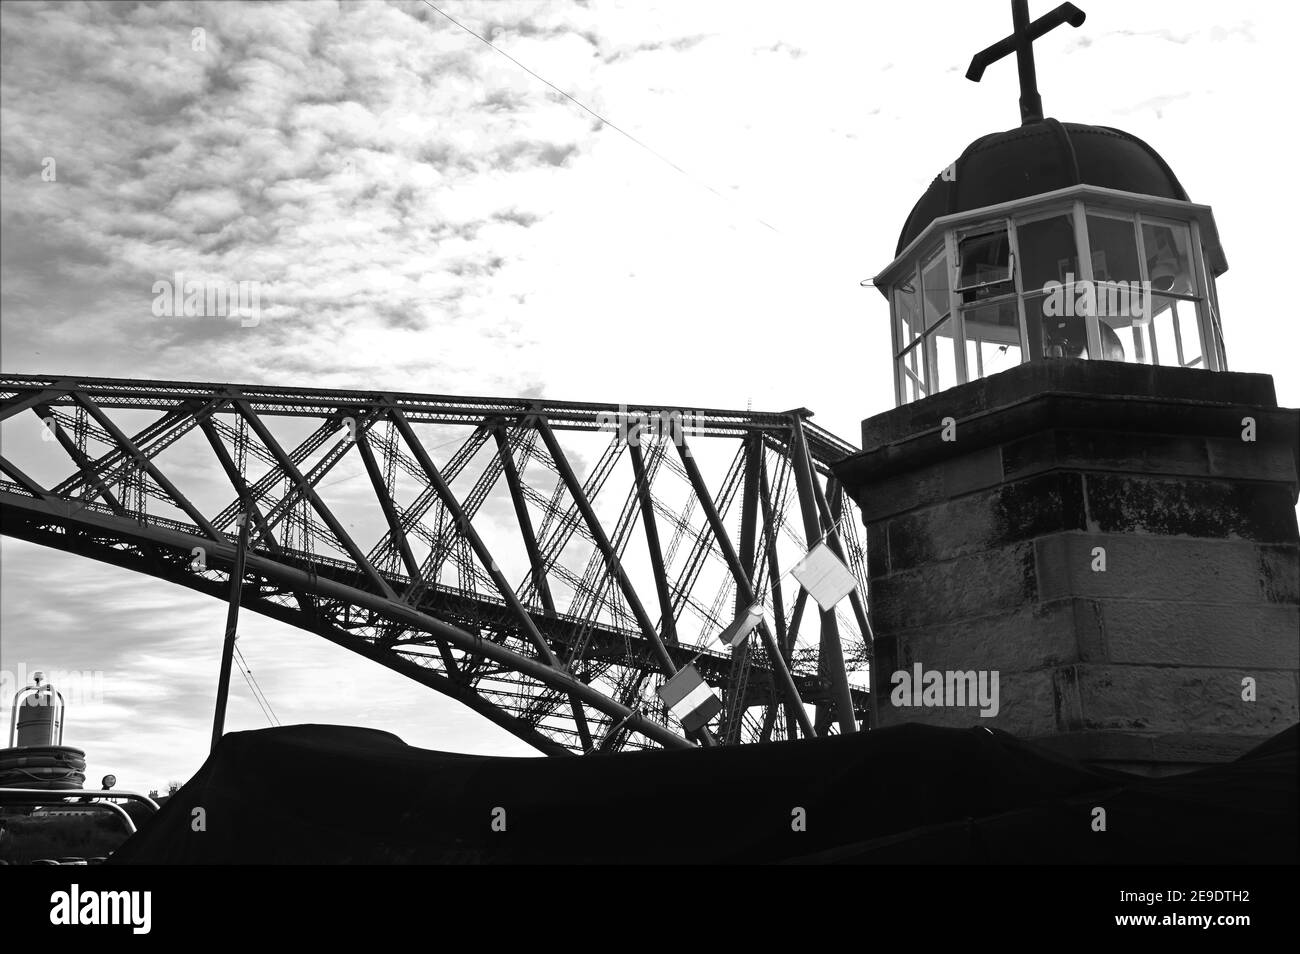 Ein Blick auf die historische und ikonische Forth-Eisenbahnbrücke, die die Forth Estuary in Schottland überspannt. Stockfoto